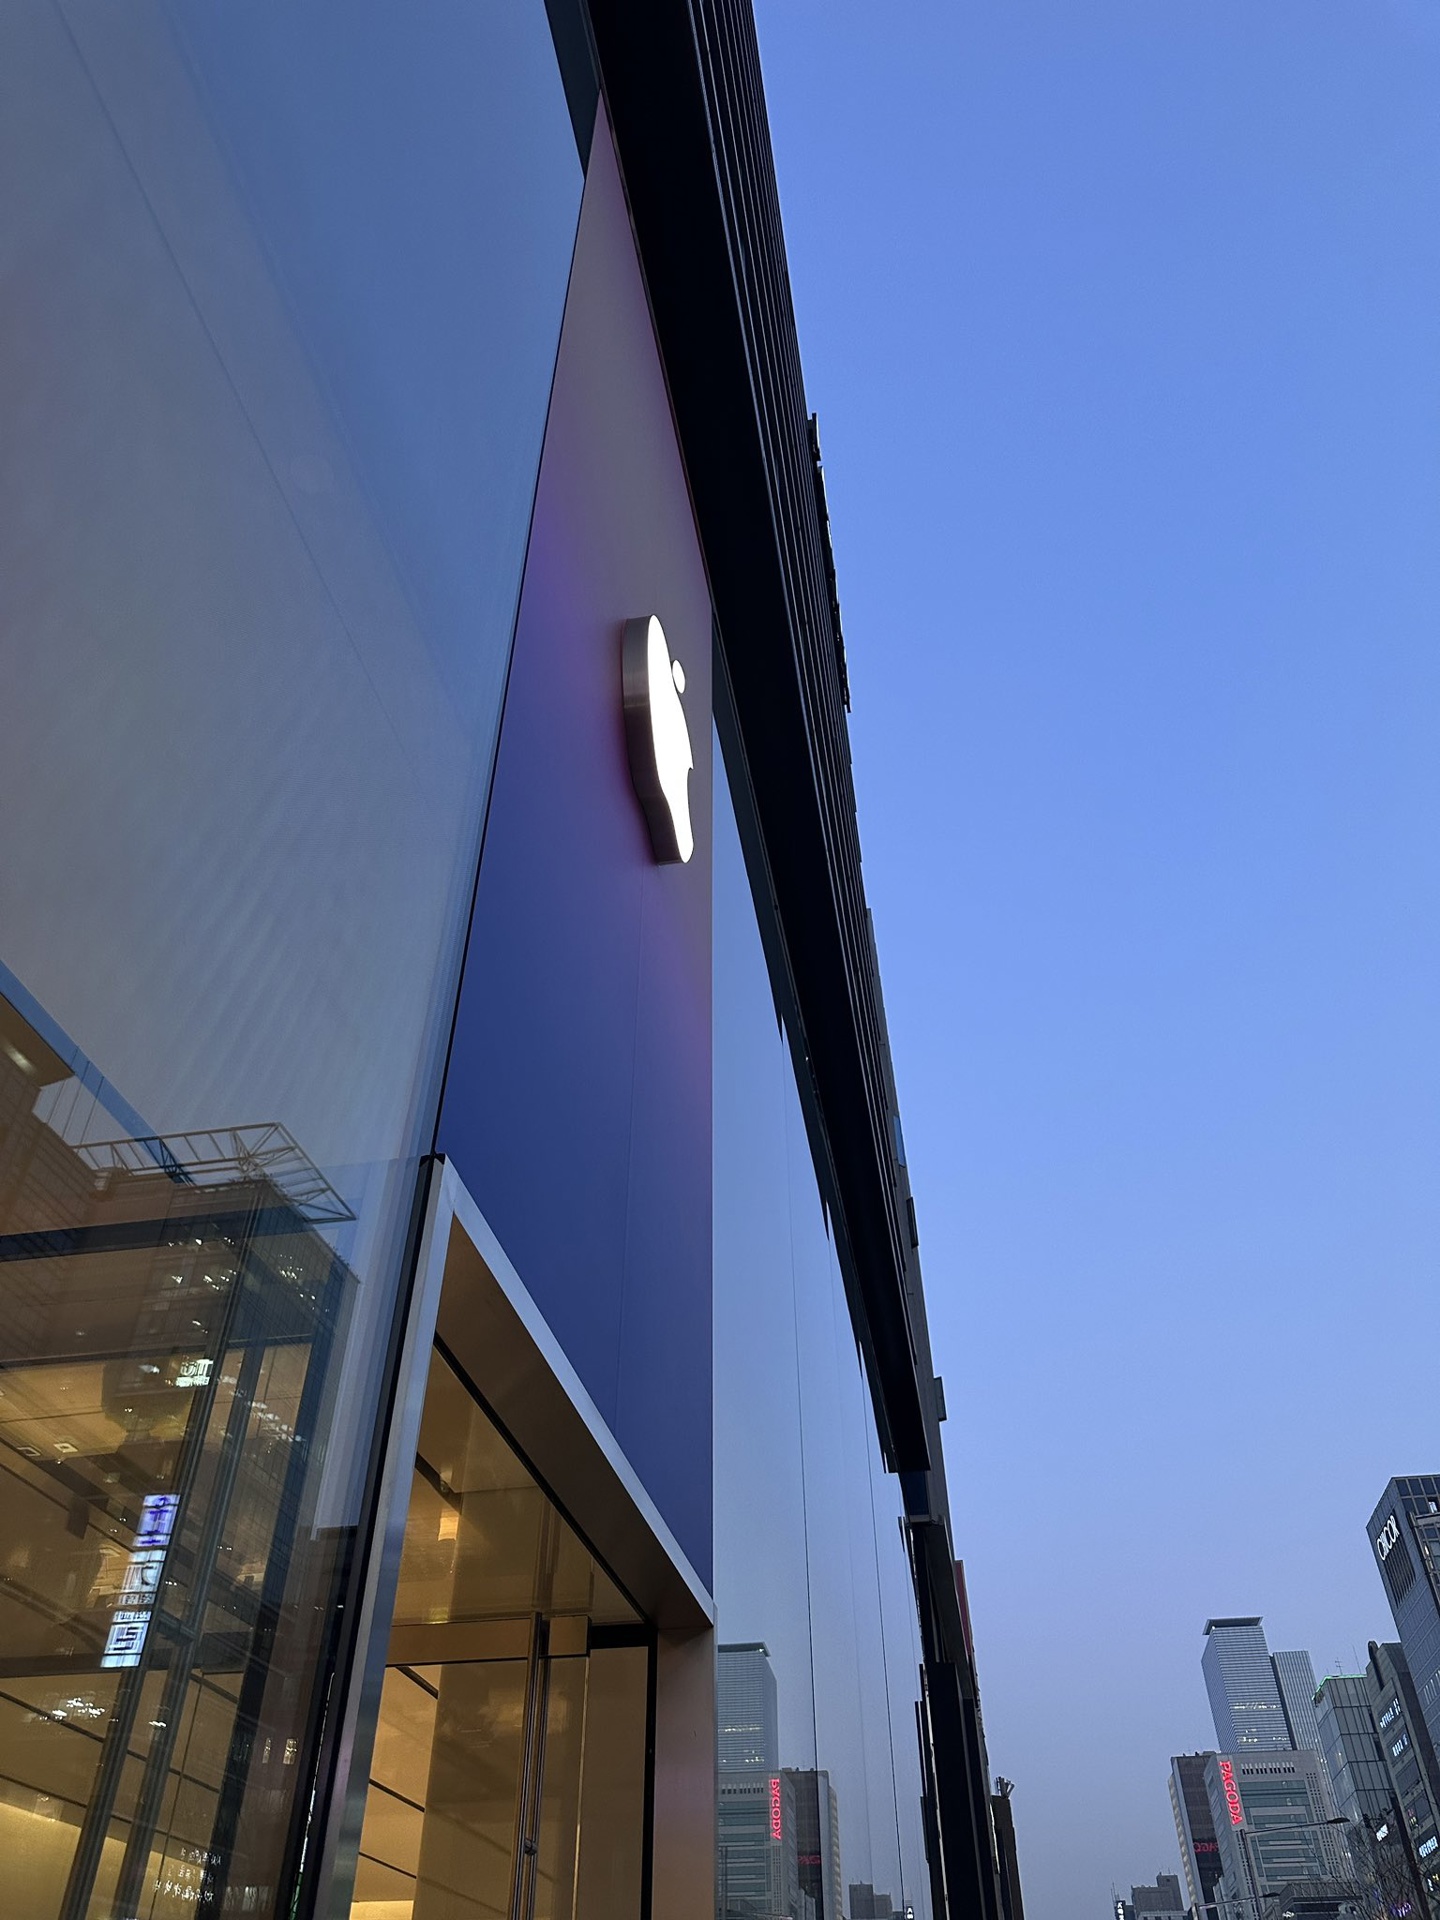 韩国第 5 家 Apple Store 正式开业，苹果分享开业盛况